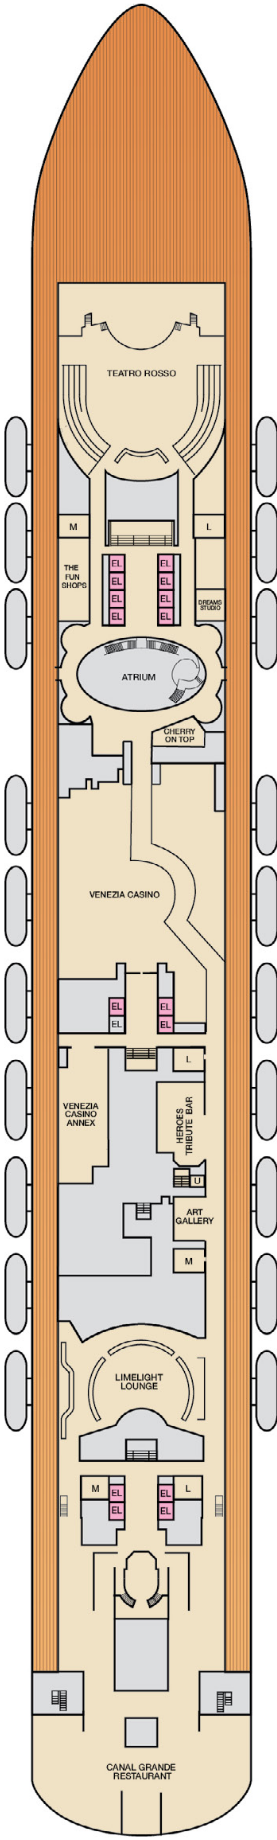 Carnival Venezia Deck 4 Deck Plan